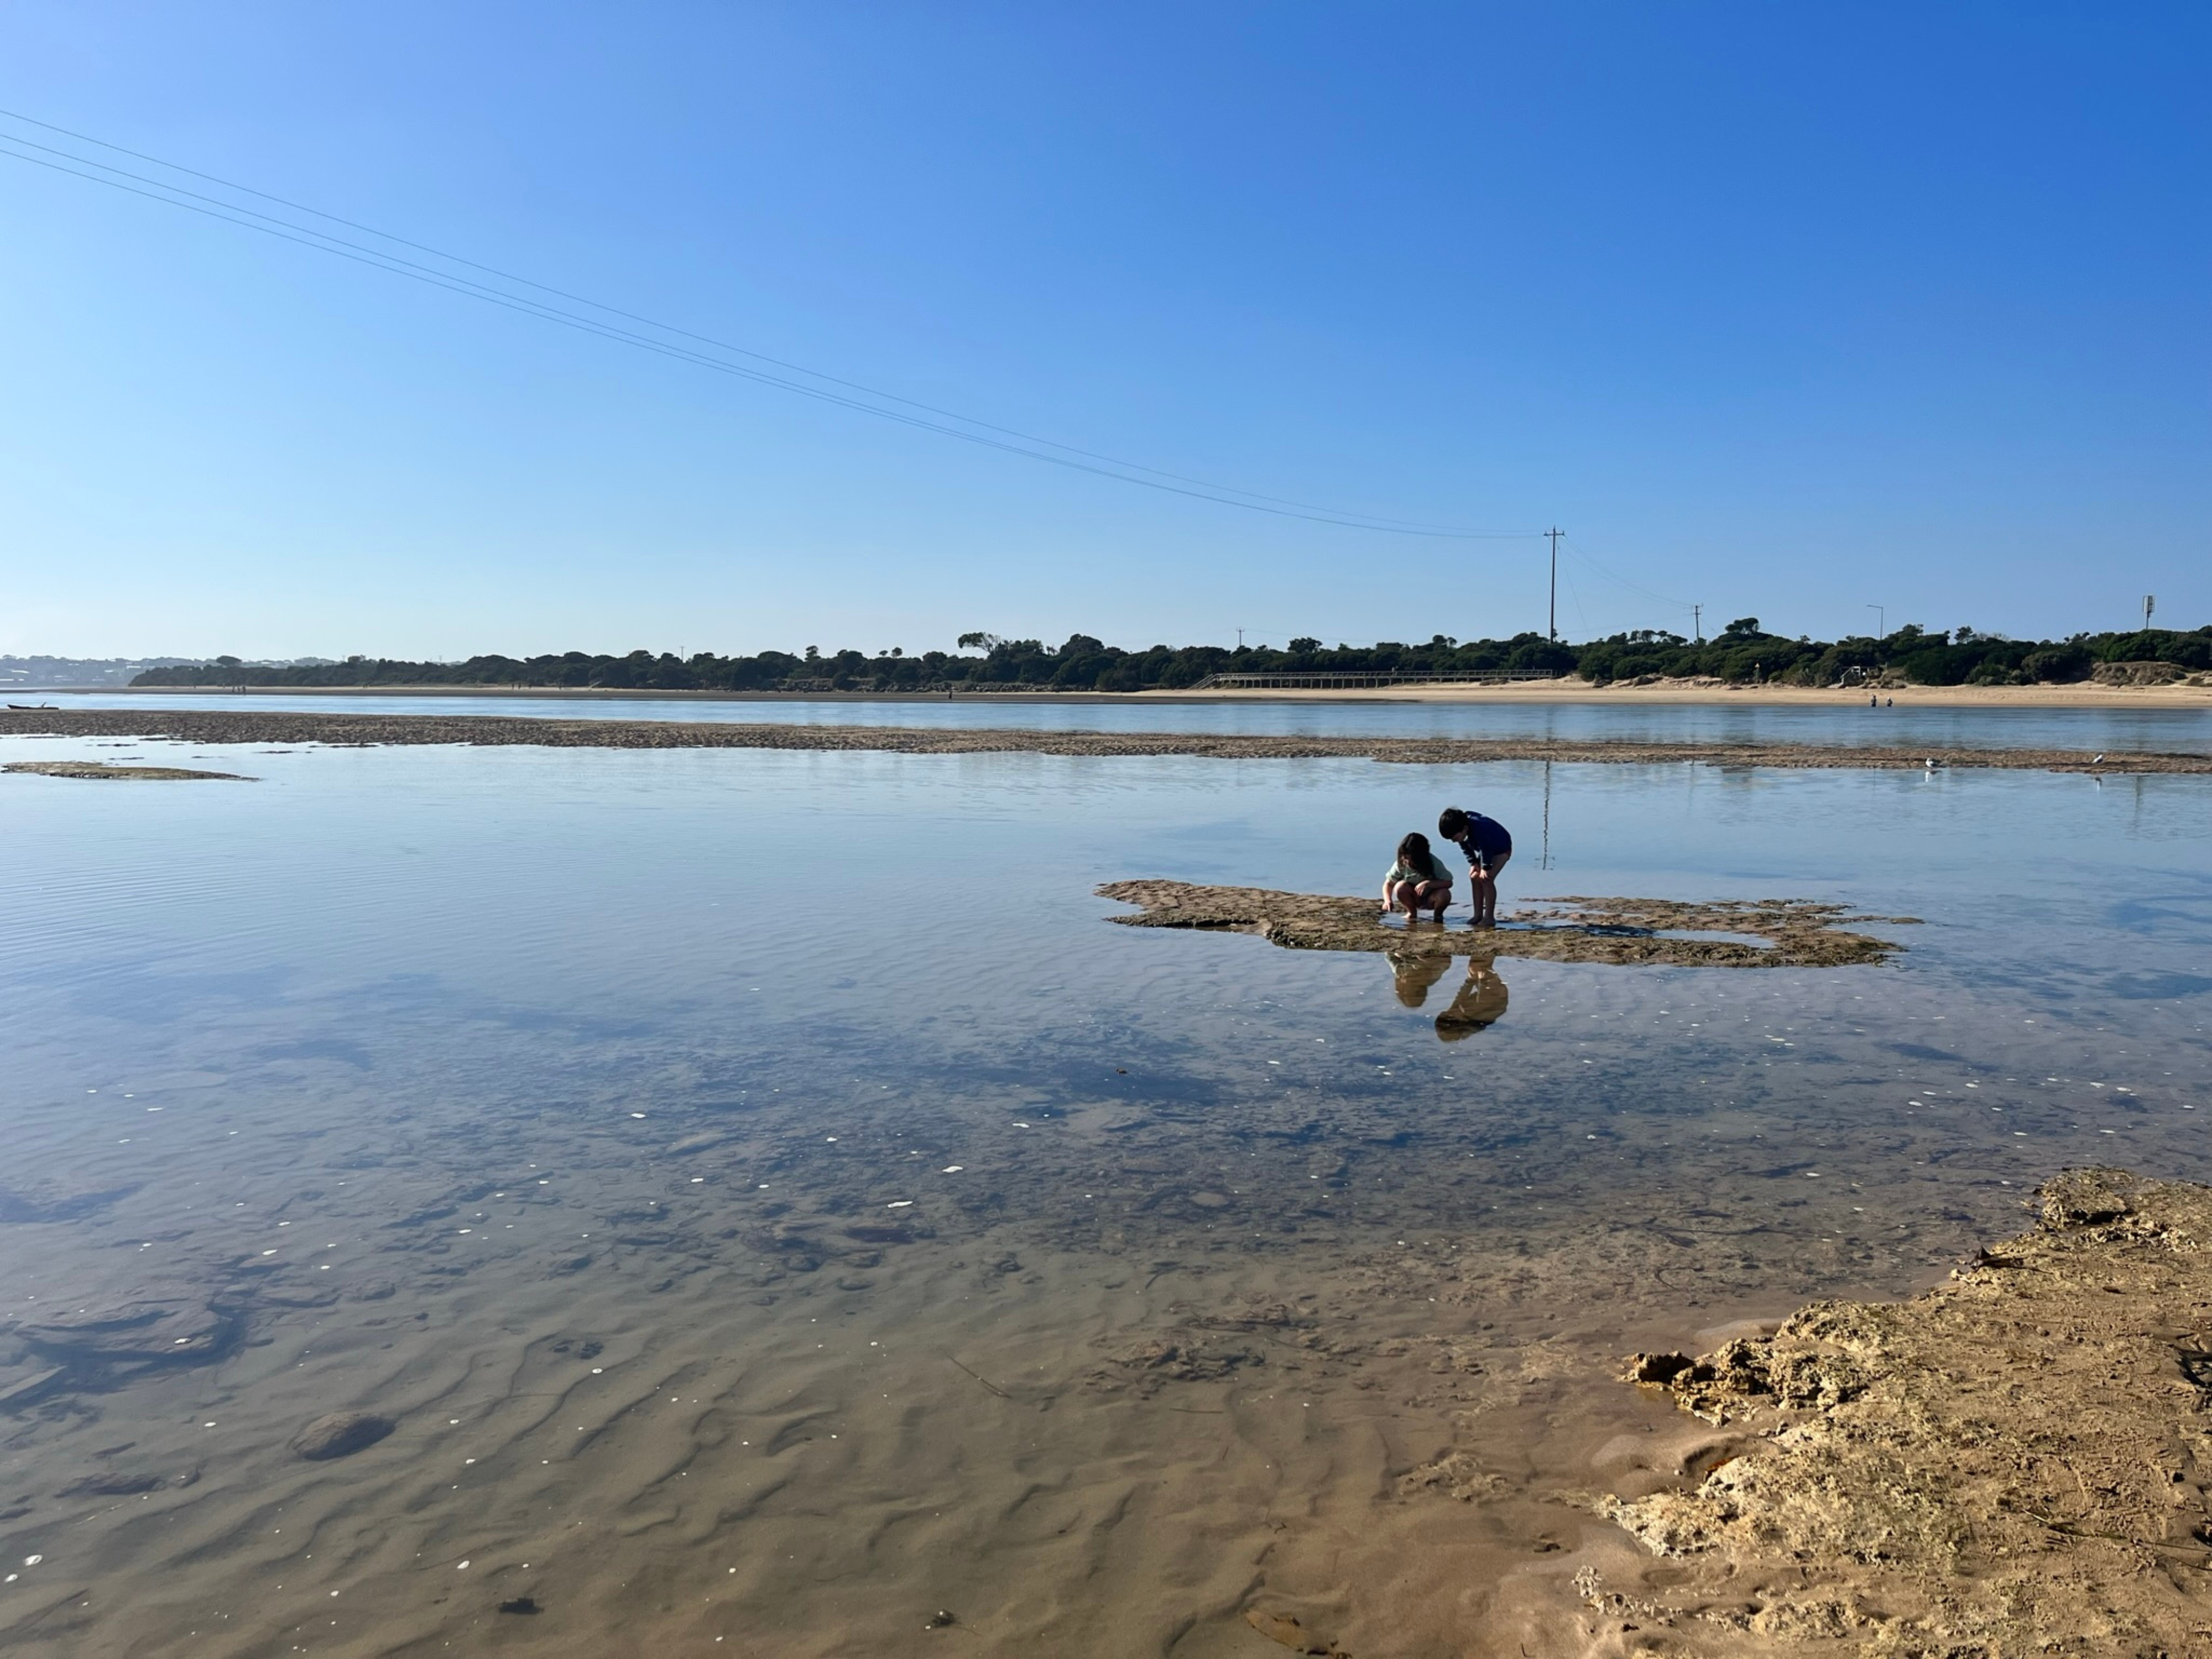 Two small children explore the Barwon River